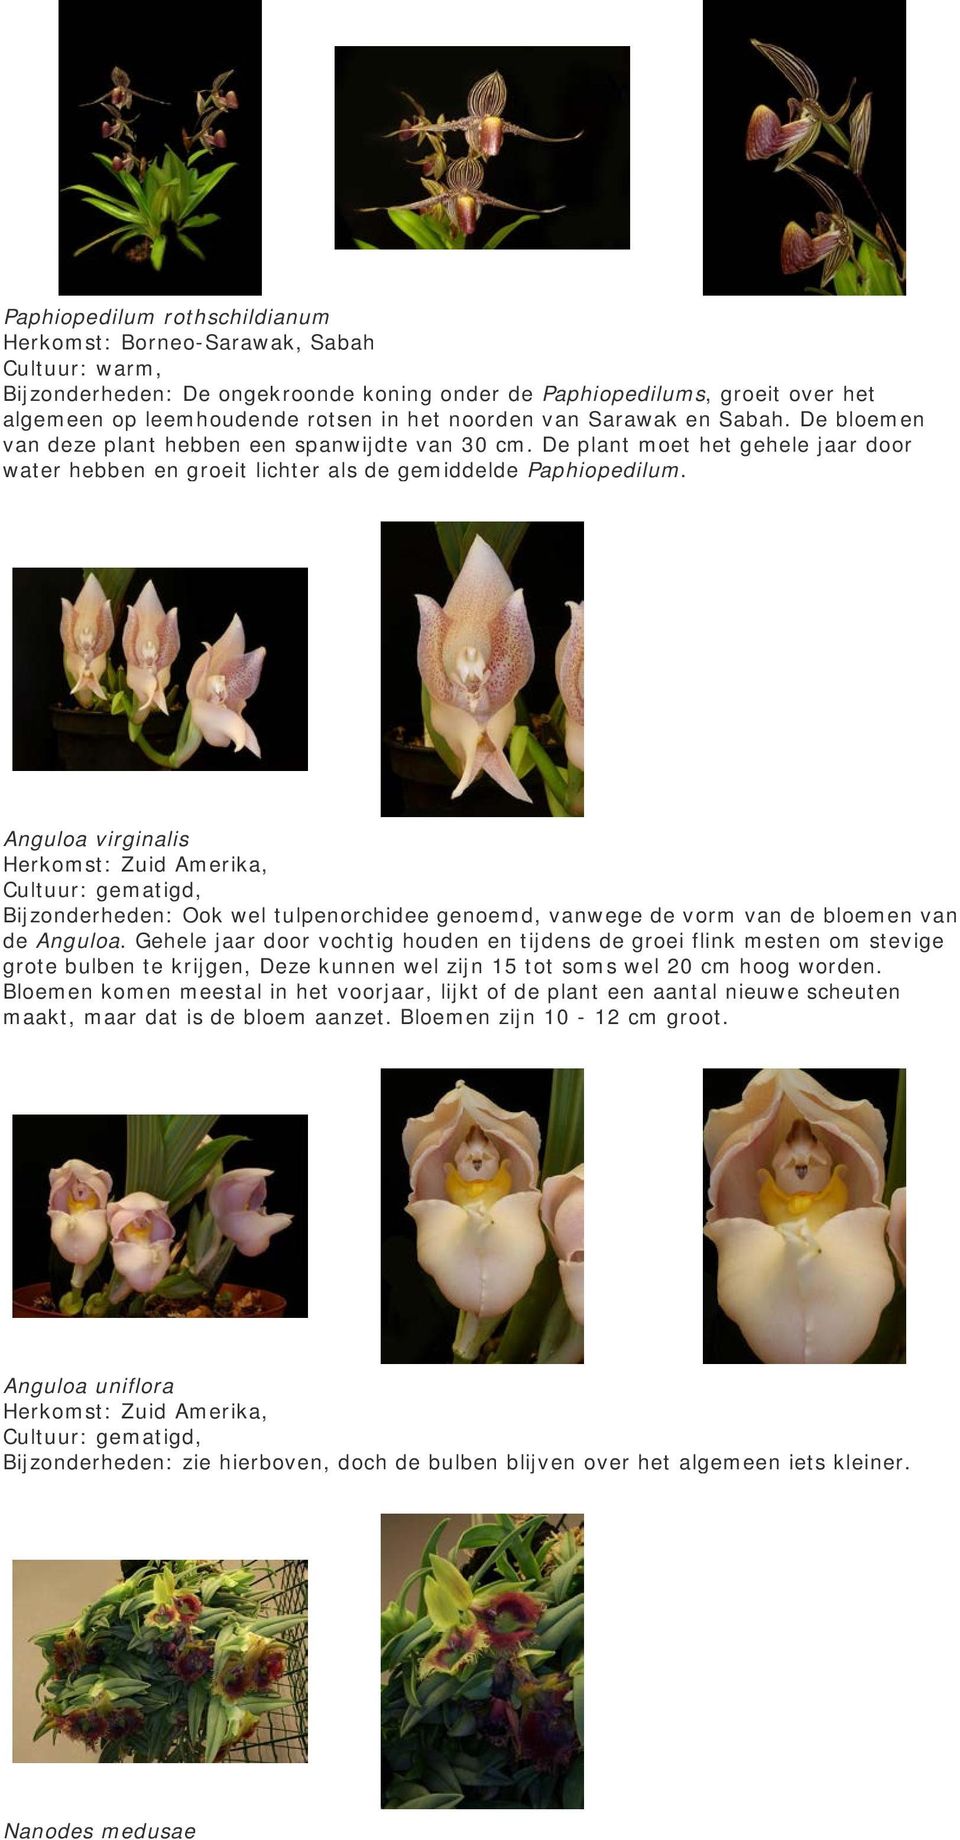 Anguloa virginalis Herkomst: Zuid Amerika, Bijzonderheden: Ook wel tulpenorchidee genoemd, vanwege de vorm van de bloemen van de Anguloa.